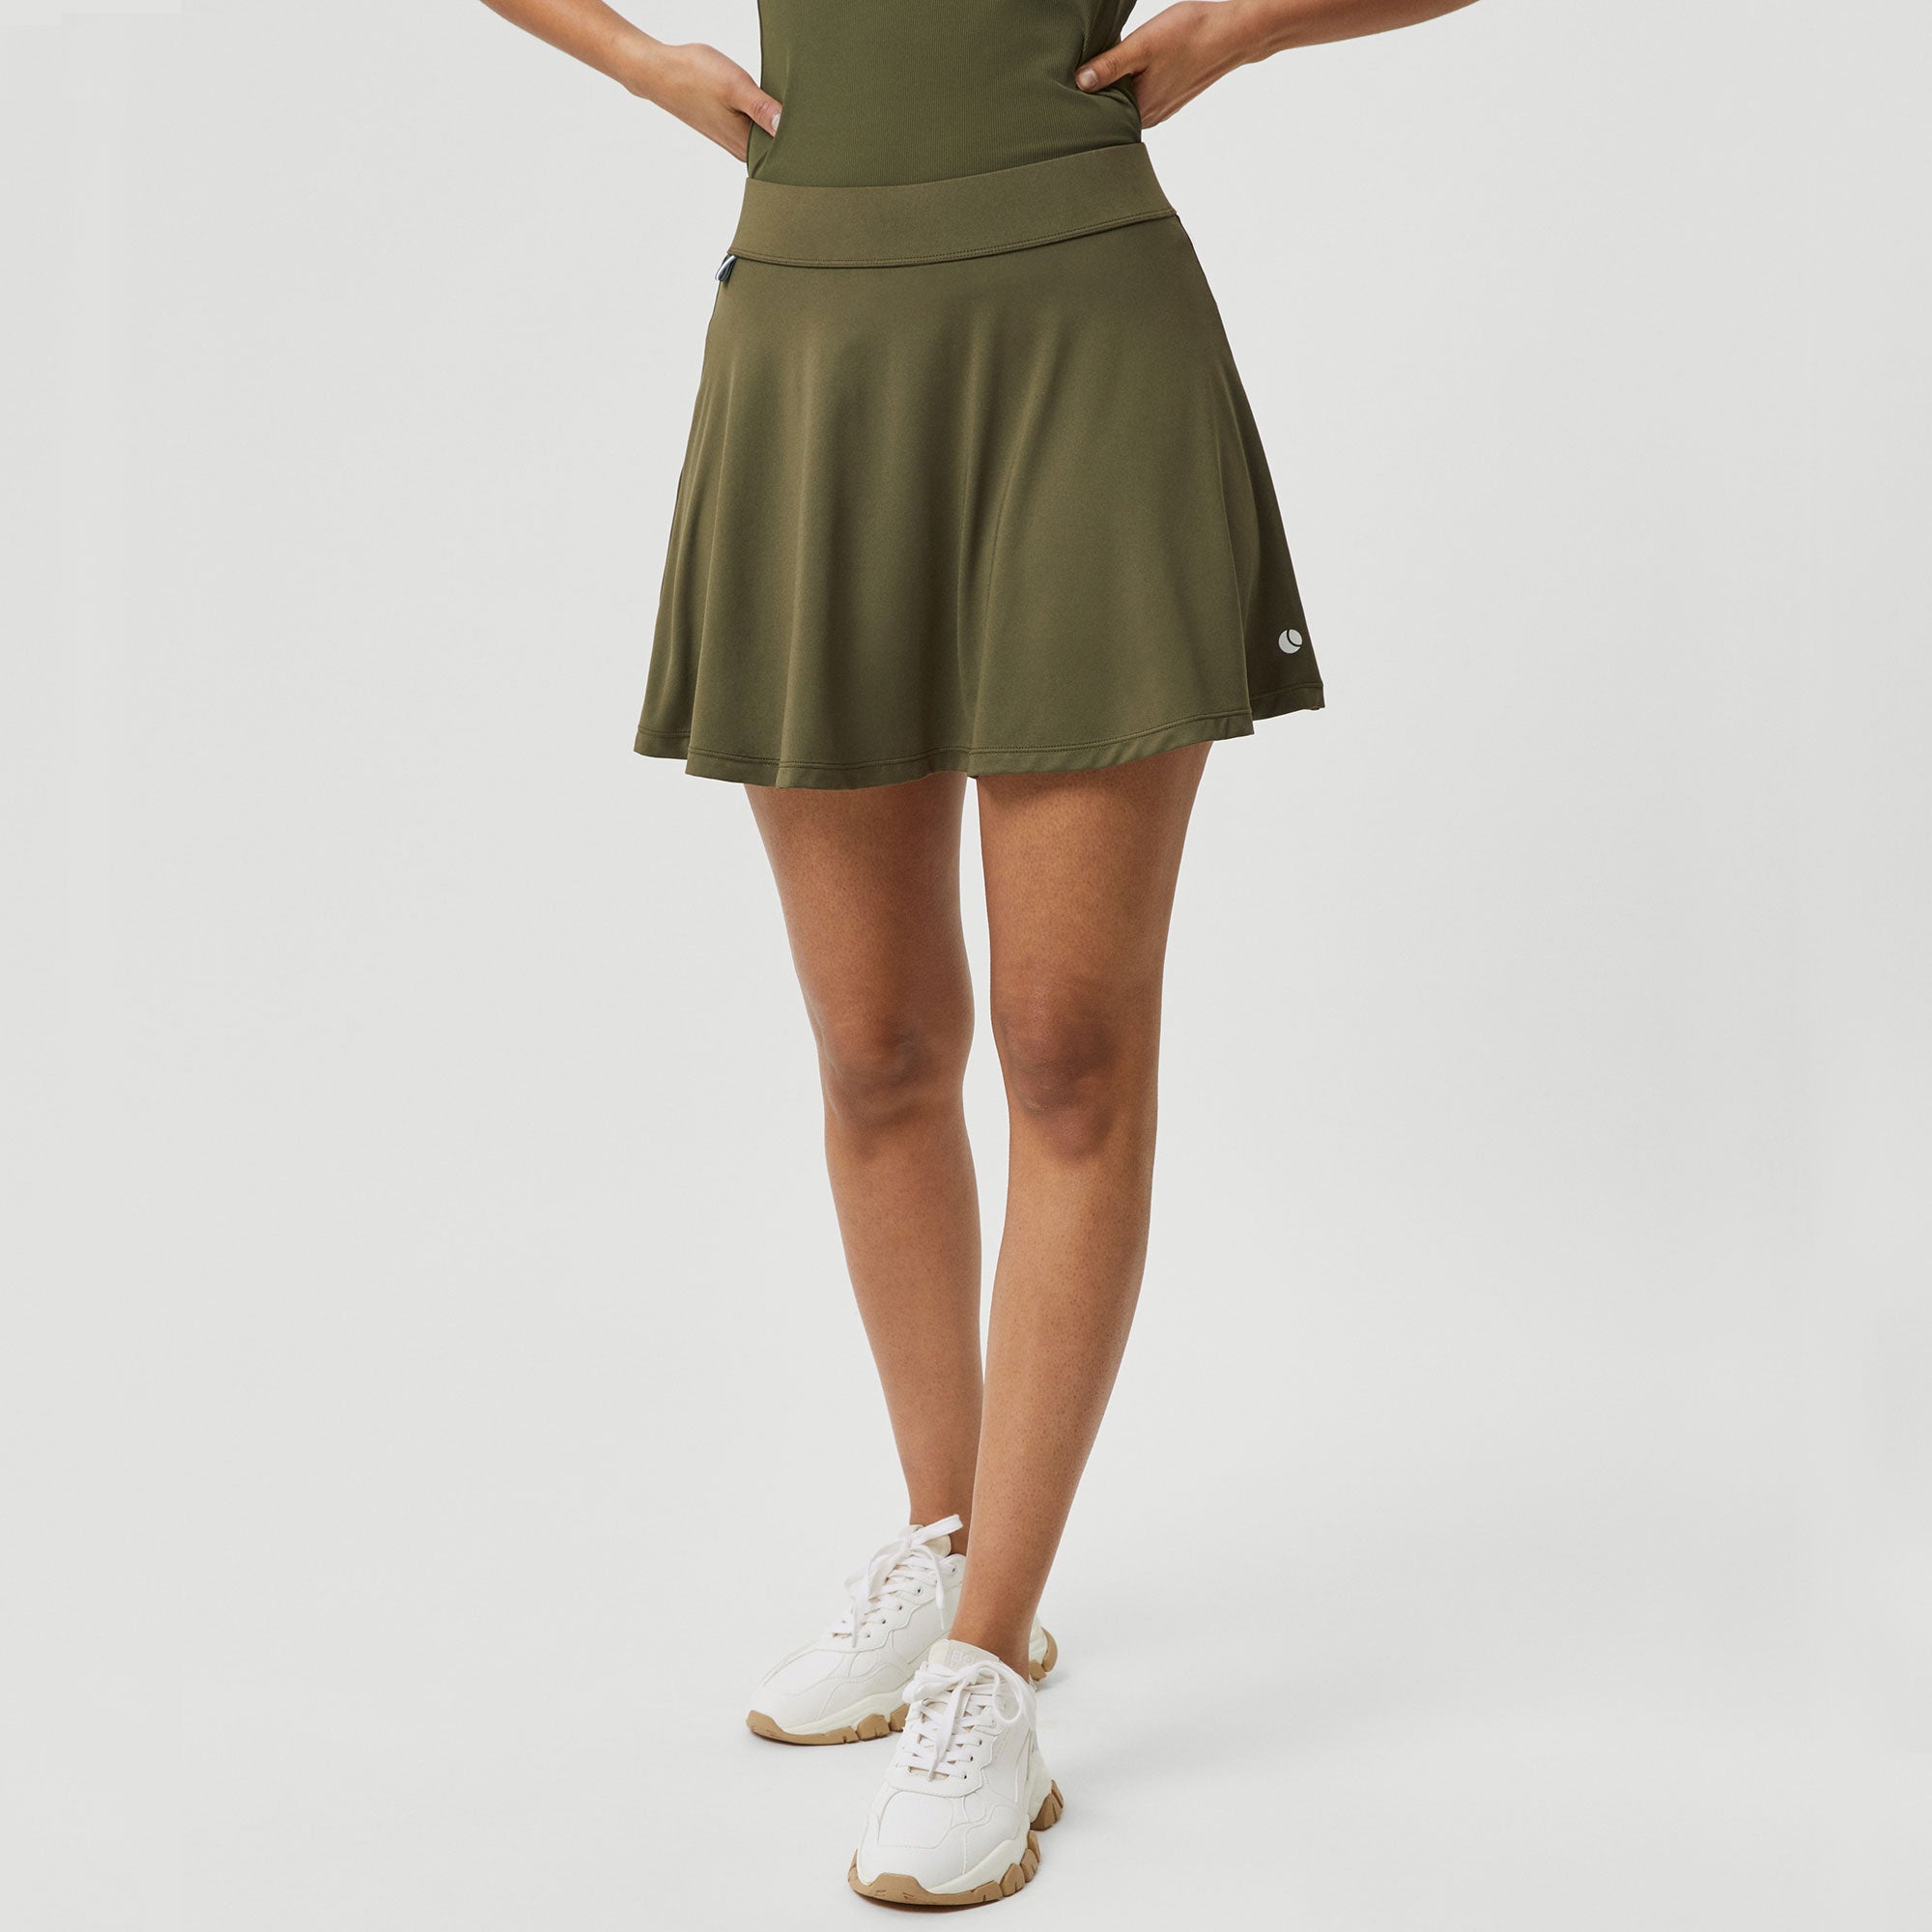 Björn Borg Ace Women's Jersey Tennis Skirt - Green (1)